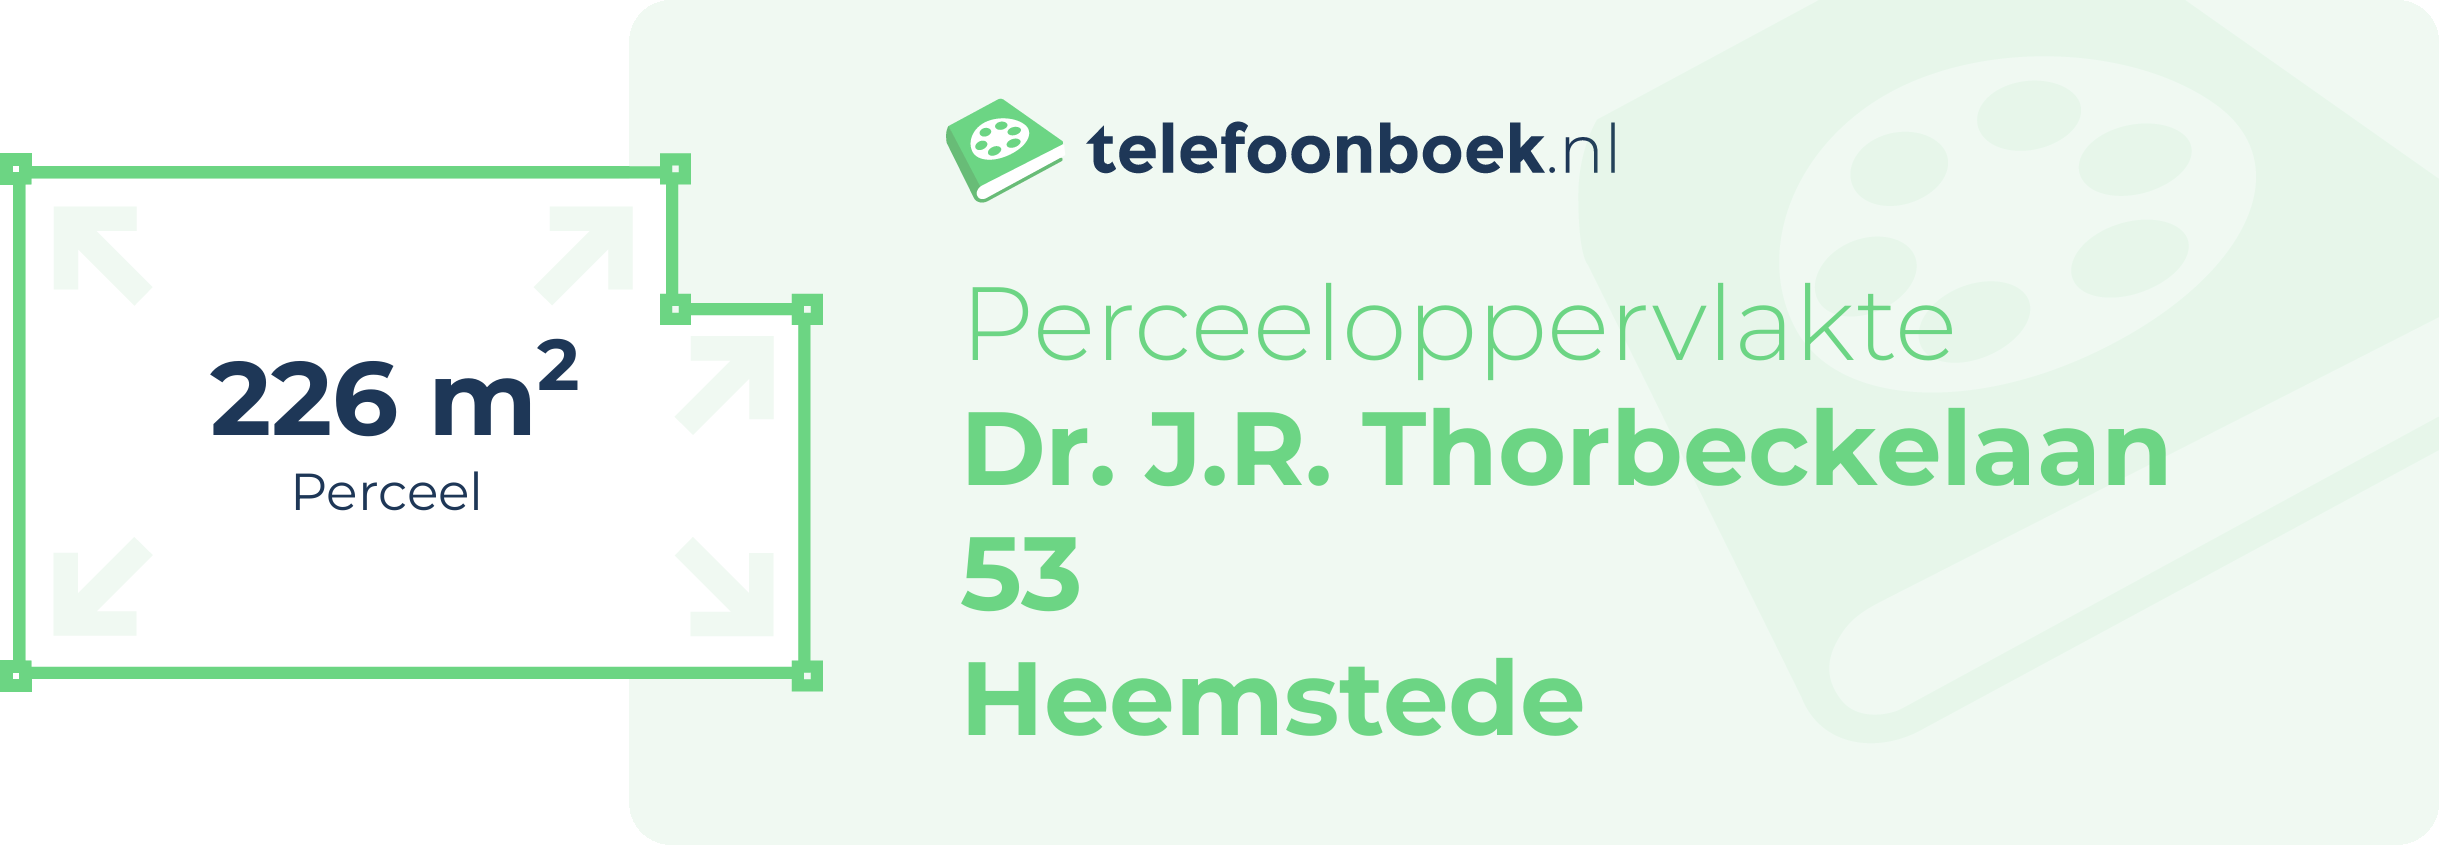 Perceeloppervlakte Dr. J.R. Thorbeckelaan 53 Heemstede